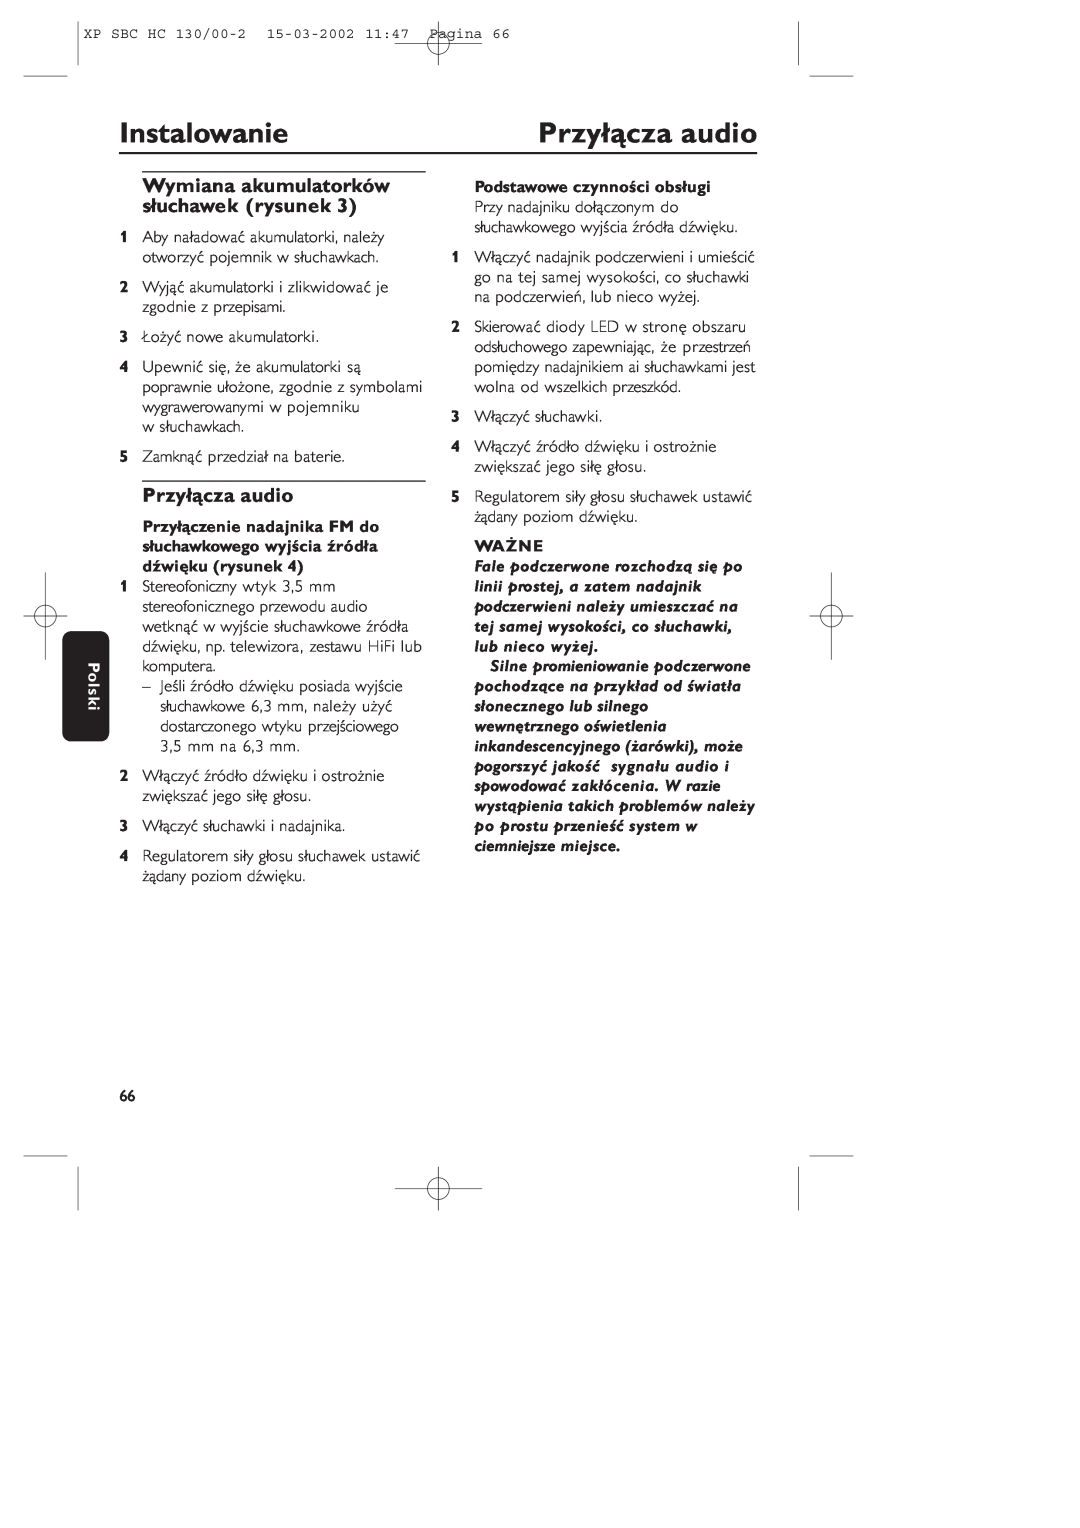 Philips SBC HC130 manual Przyłącza audio, Instalowanie, Wymiana akumulatorków słuchawek rysunek, Polski, Ważne 